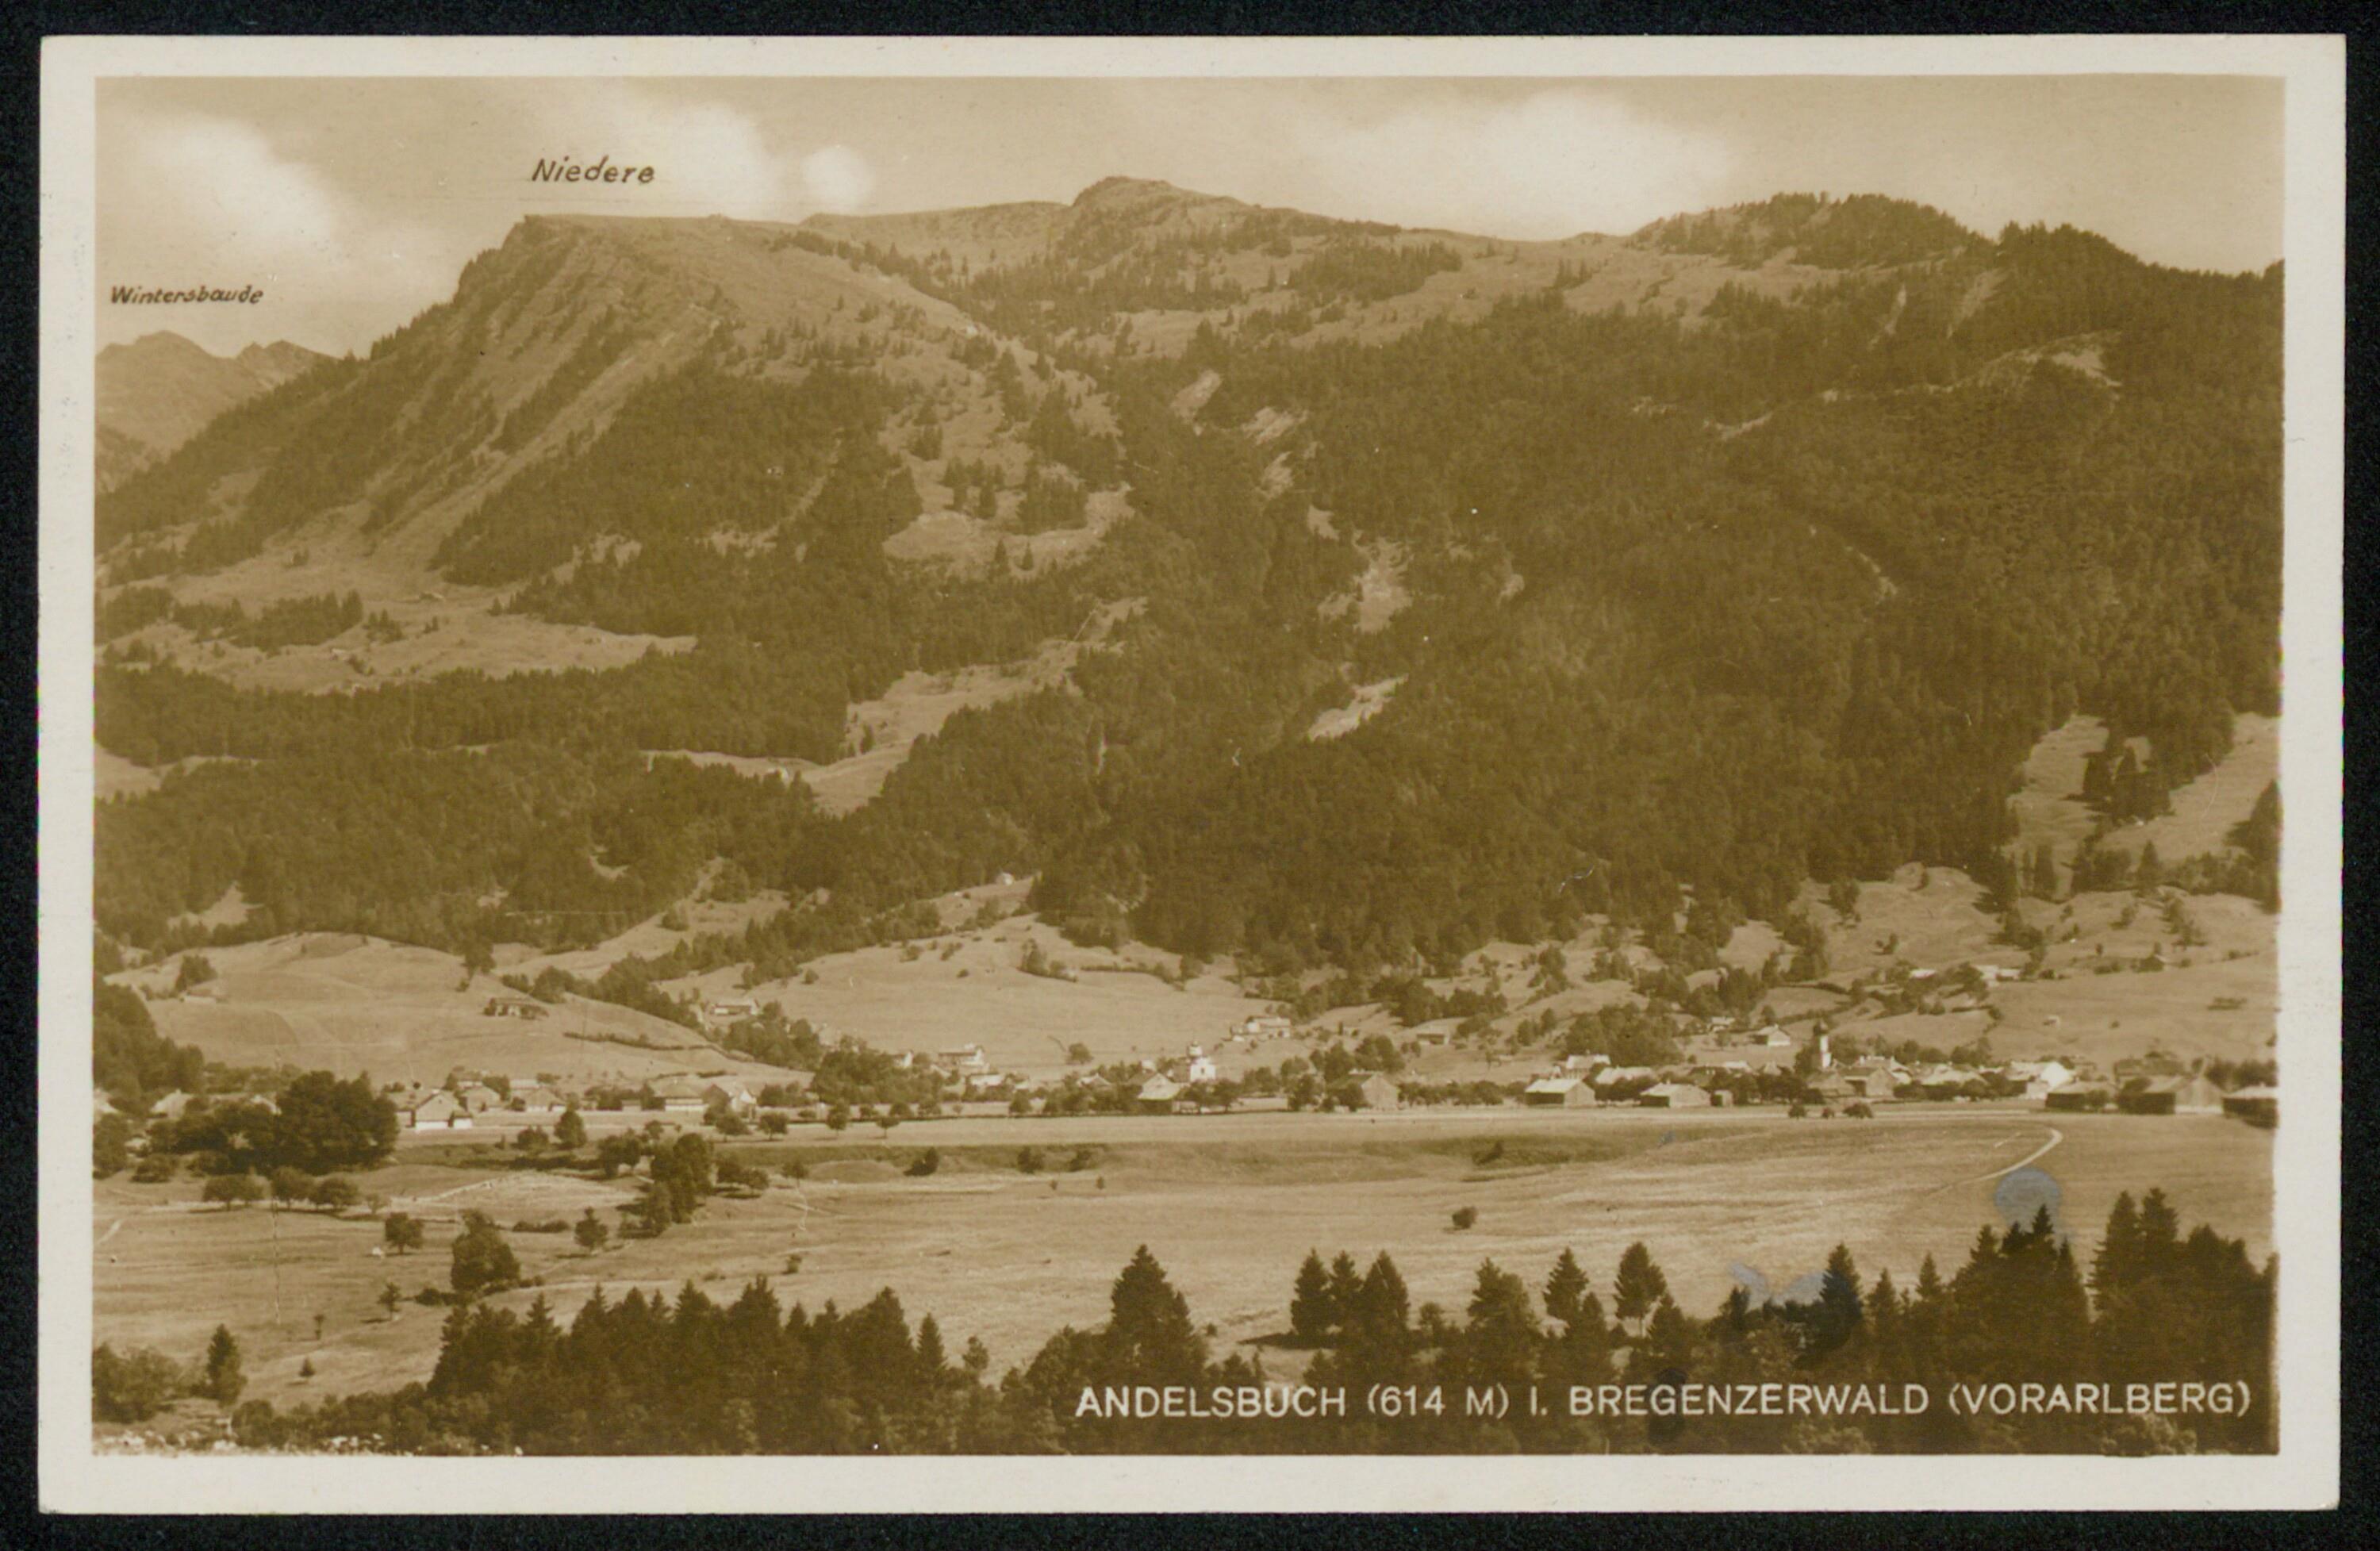 Andelsbuch (614 m) i. Bregenzerwald (Vorarlberg)></div>


    <hr>
    <div class=